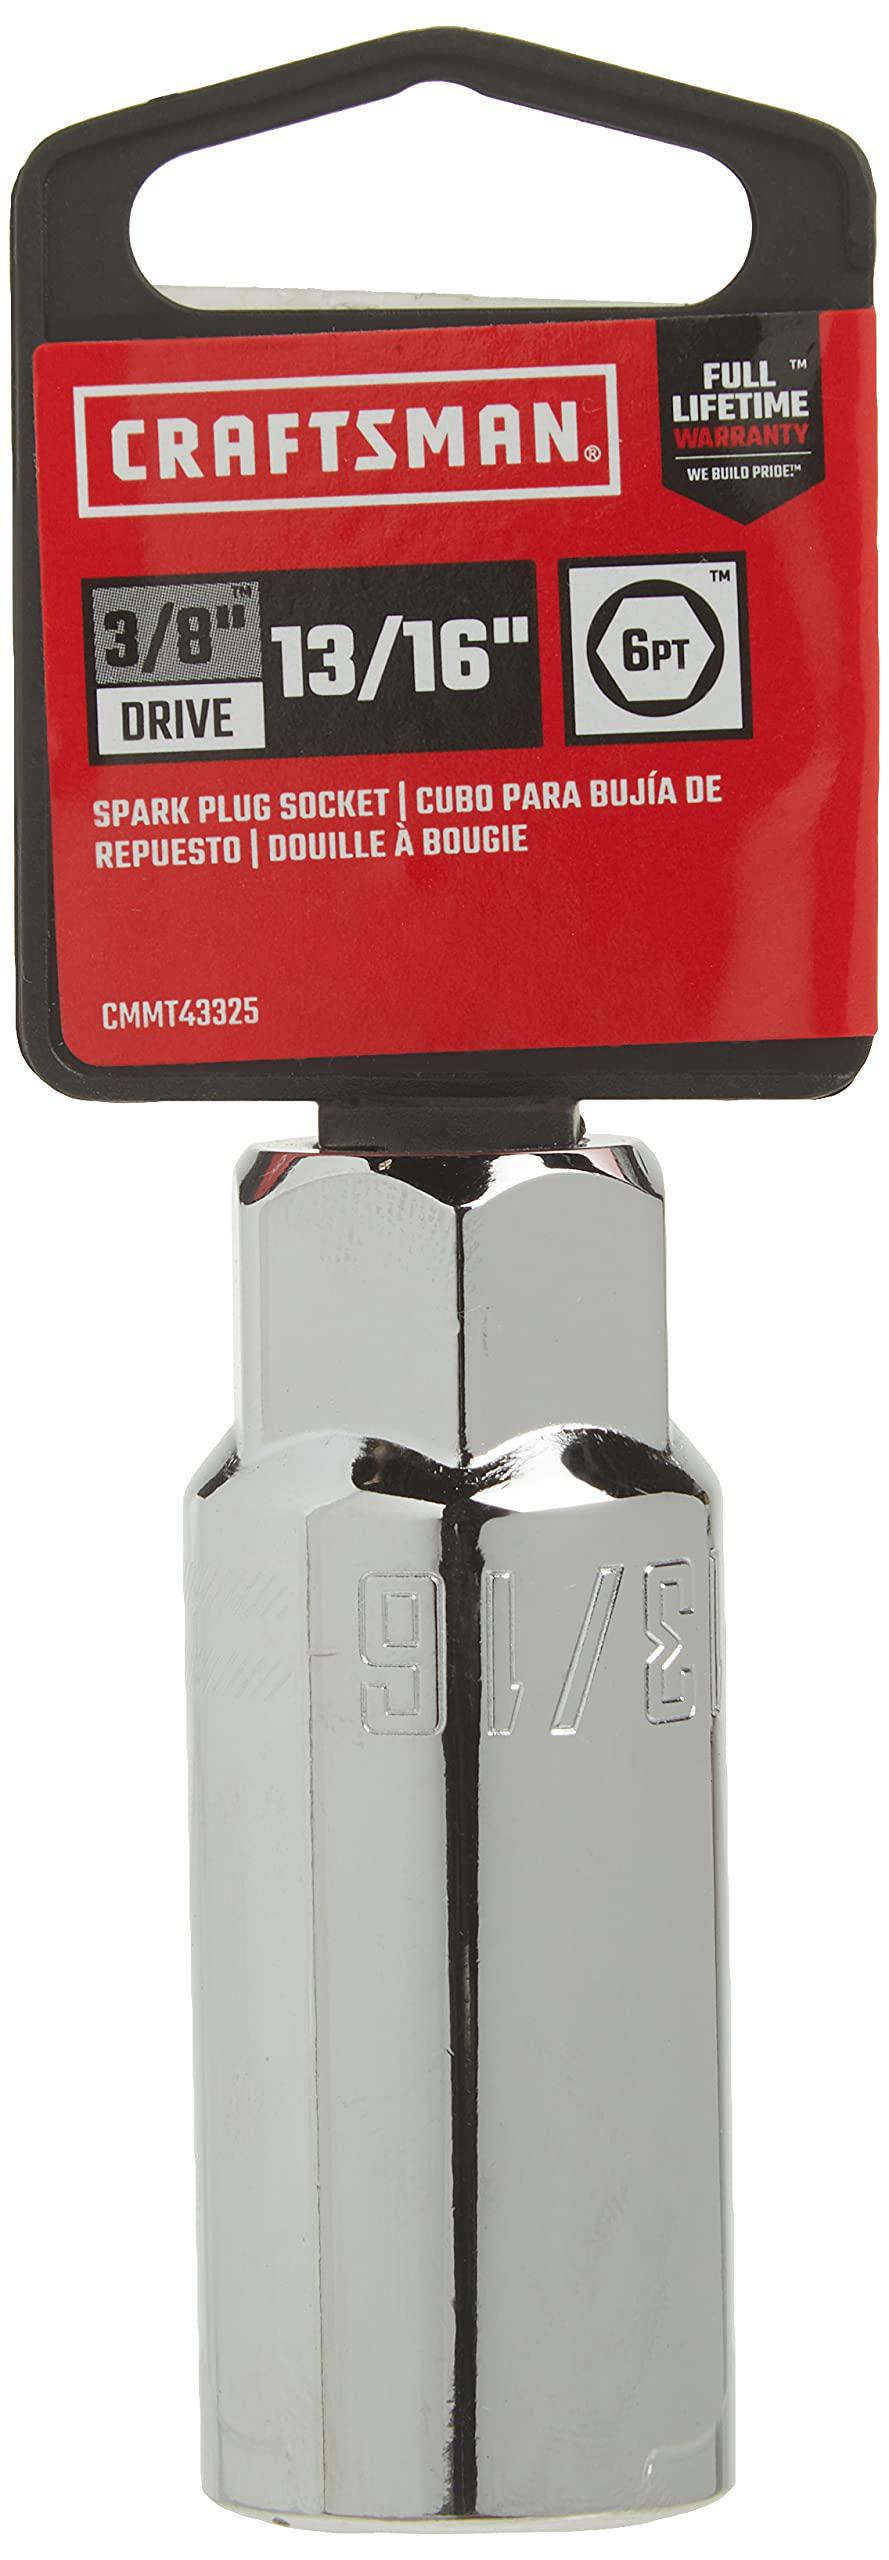 craftsman 13/16" spark plug socket, 3/8-inch drive (cmmt43325)